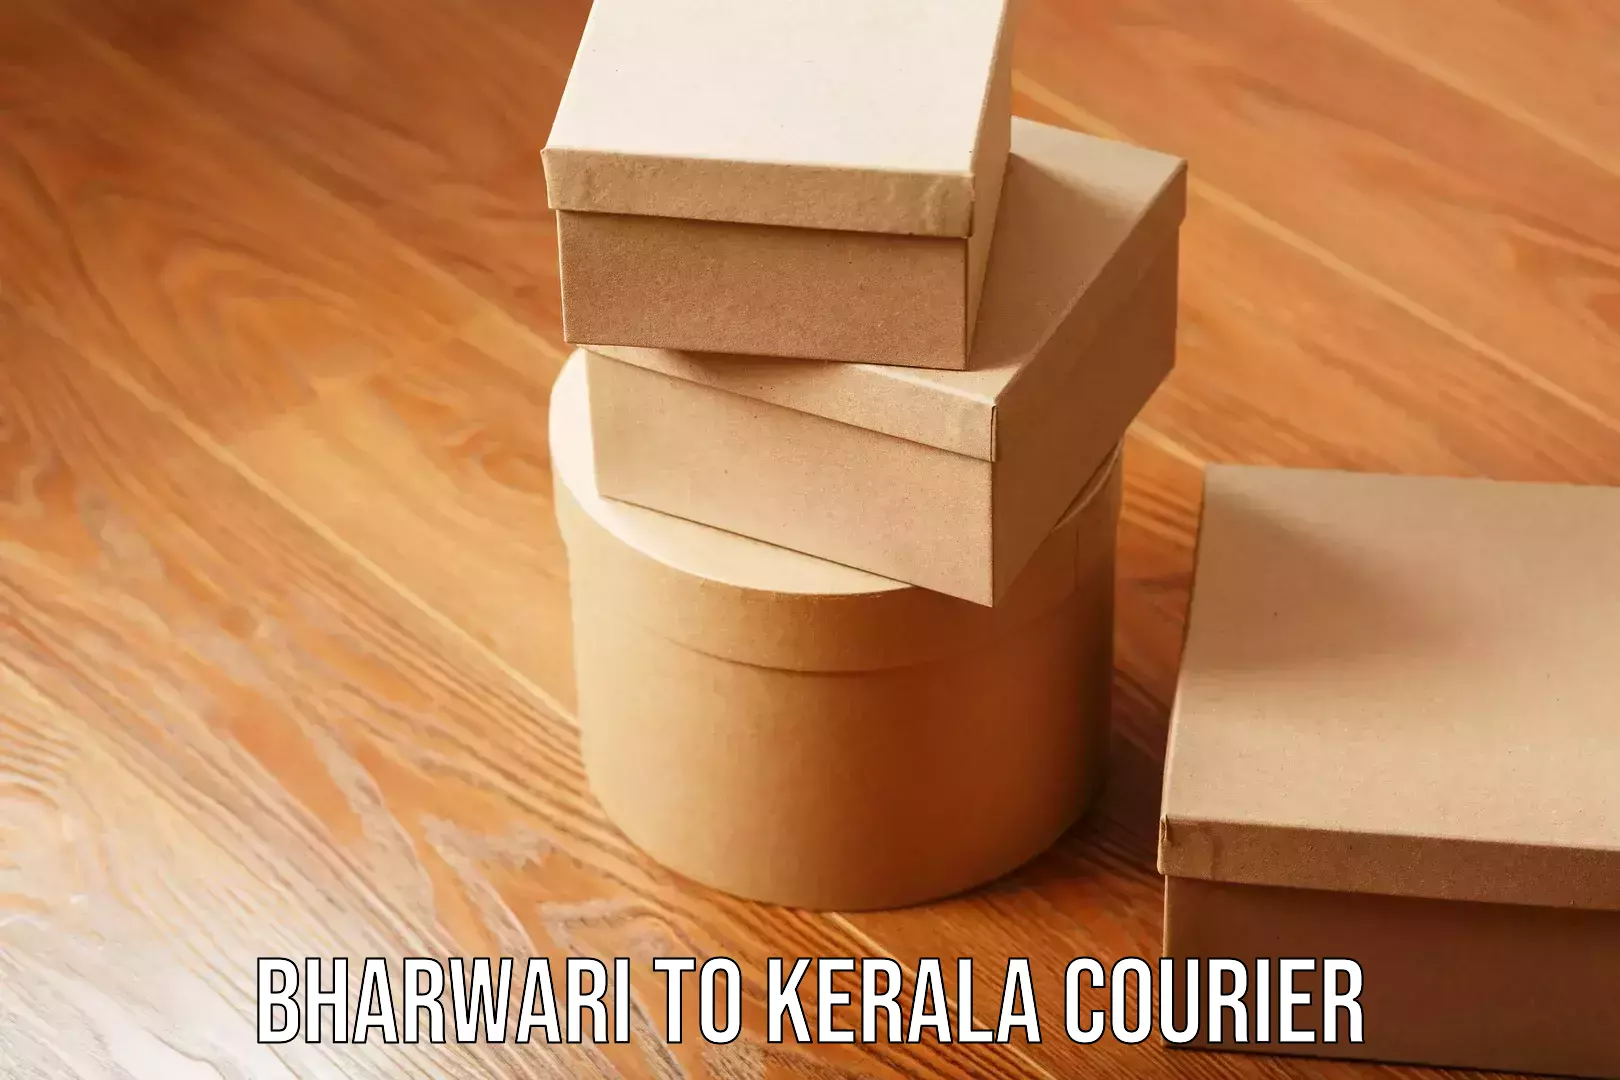 Door-to-door freight service Bharwari to Kerala